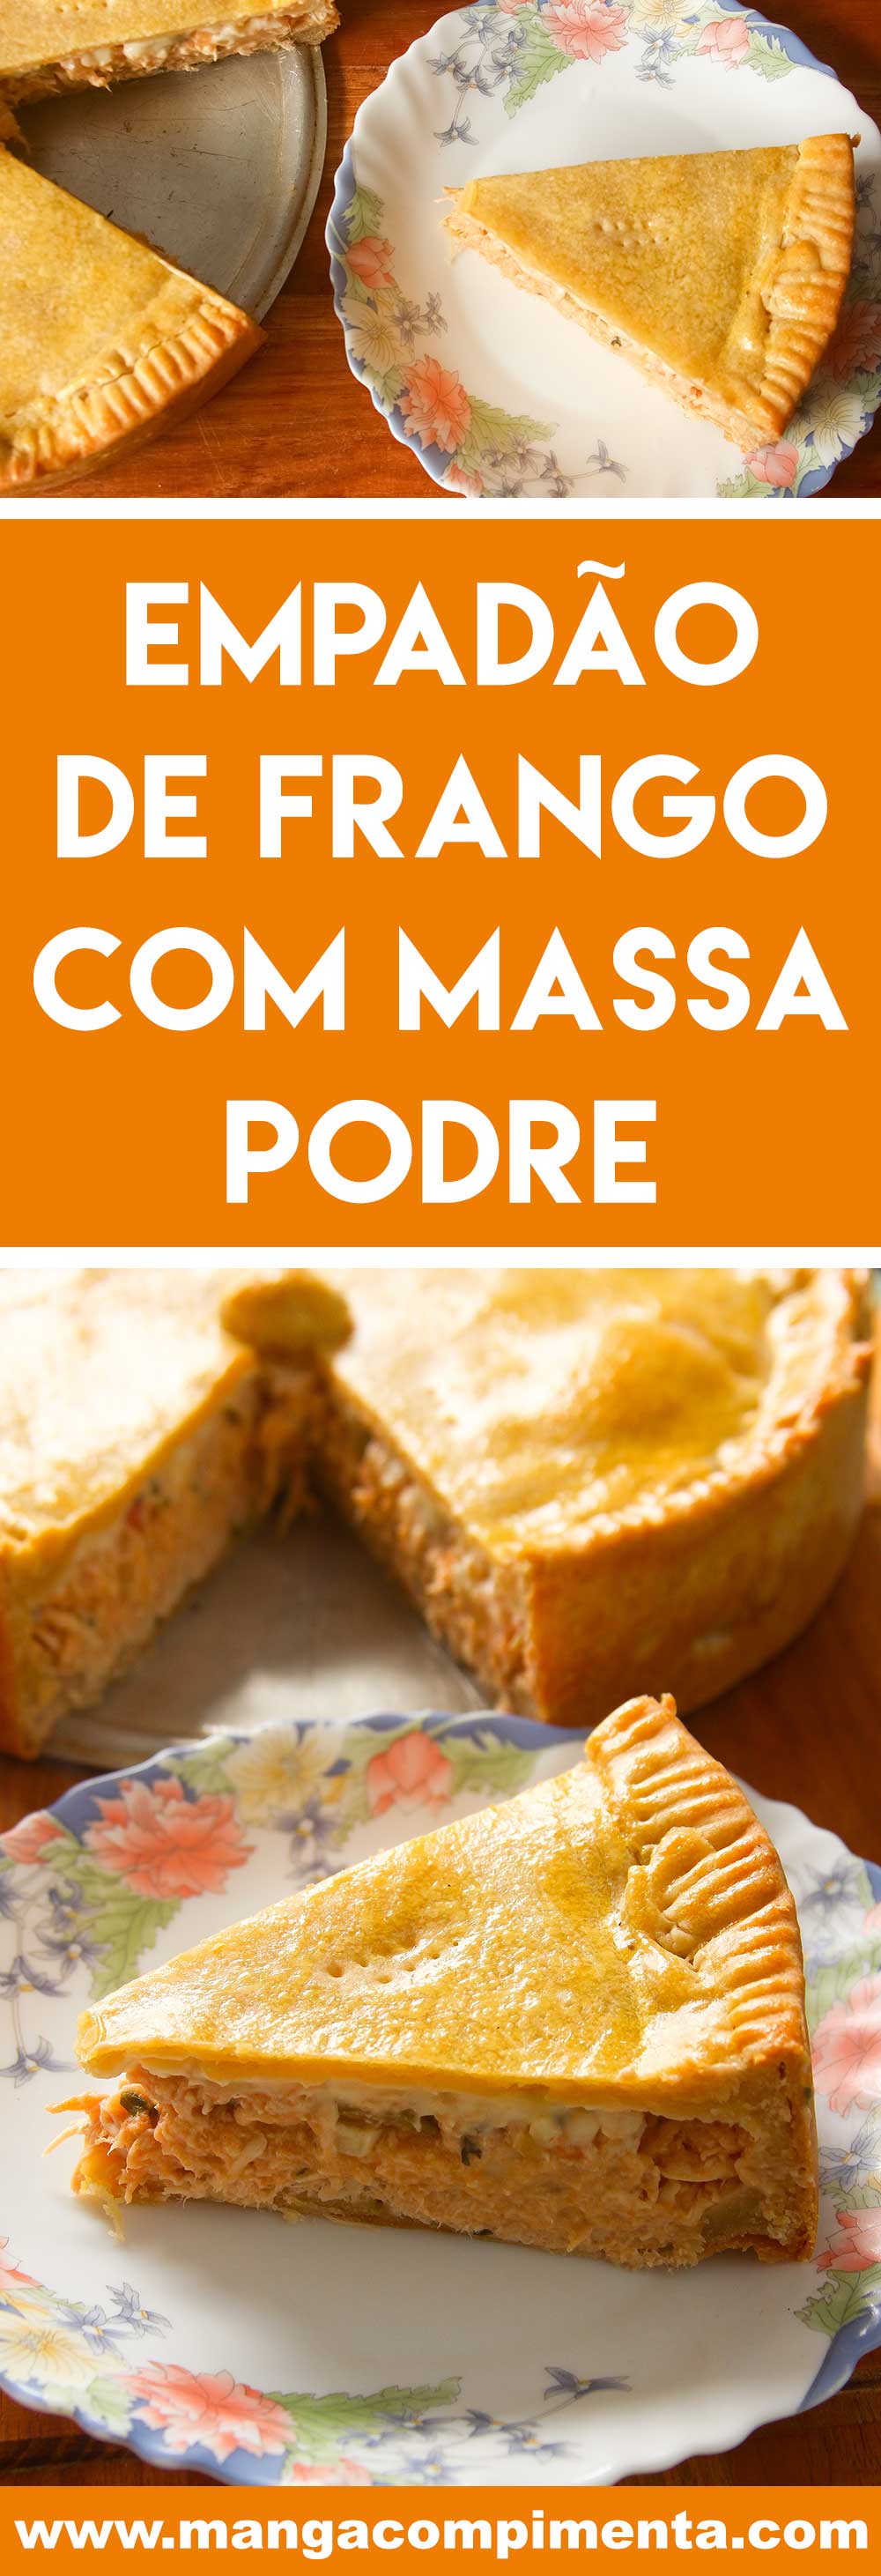 Receita de Empadão de Frango com Massa Podre - Youtube - uma torta  caseira e deliciosa!